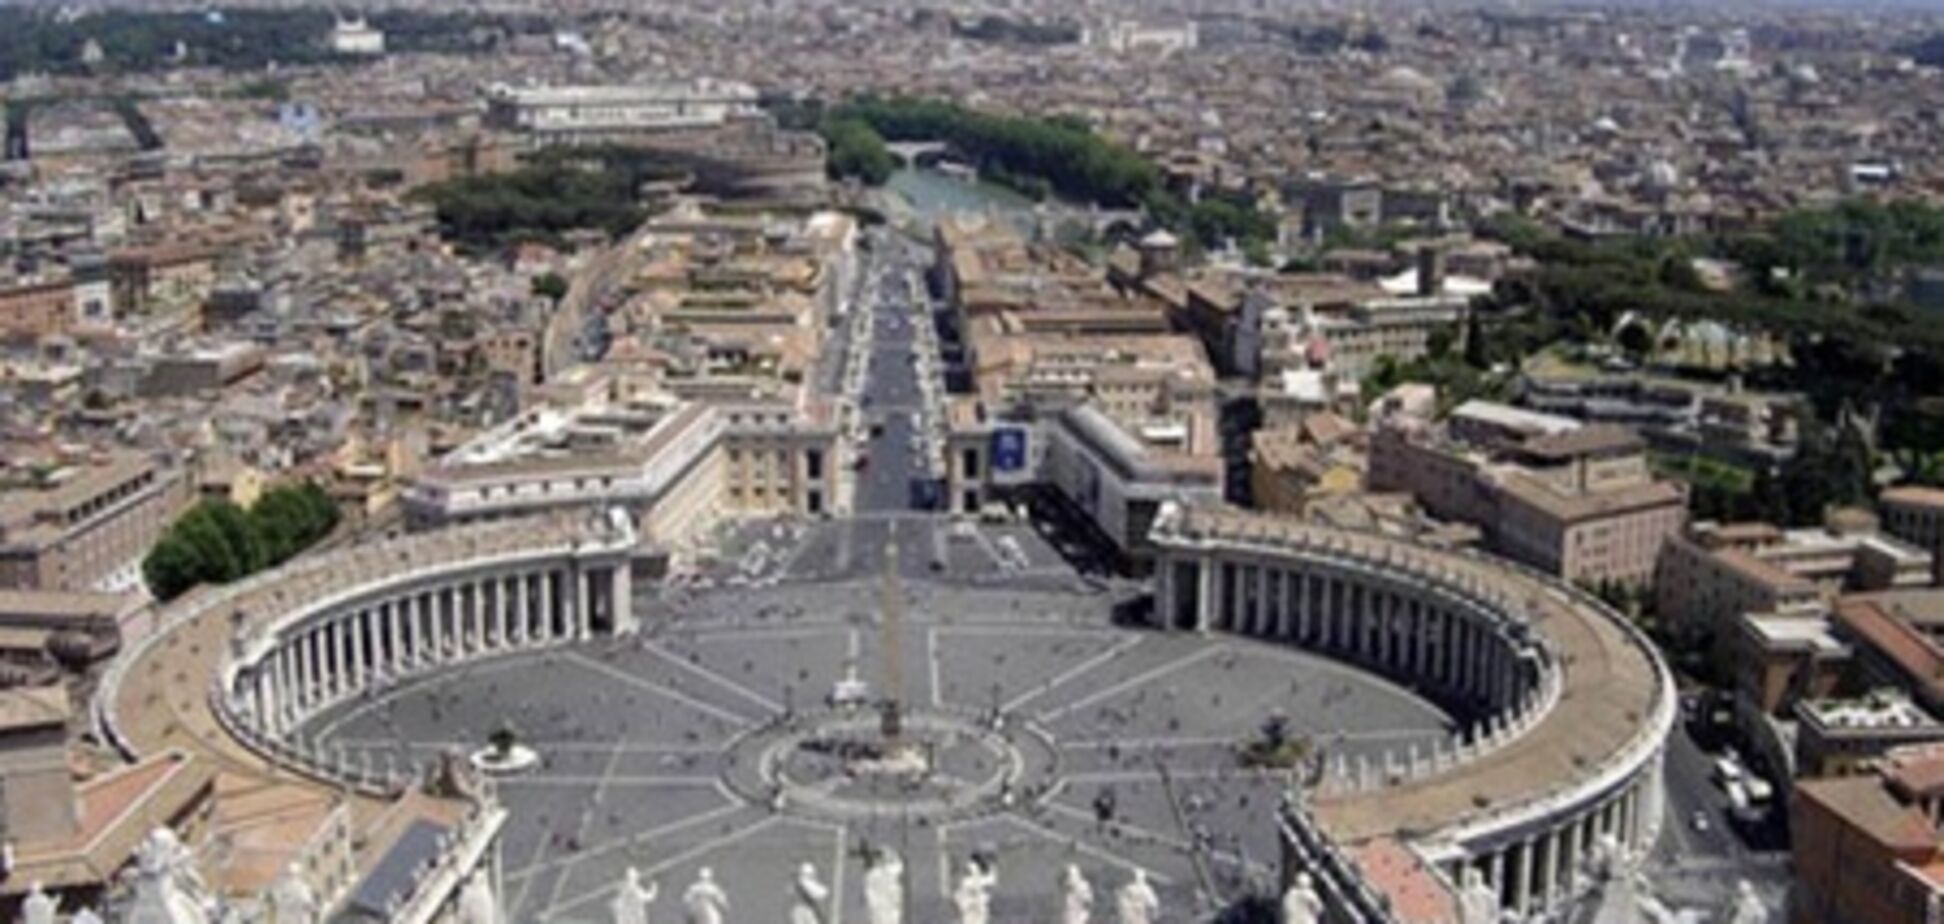 Ватикан объявил о внутренней экономической реформе